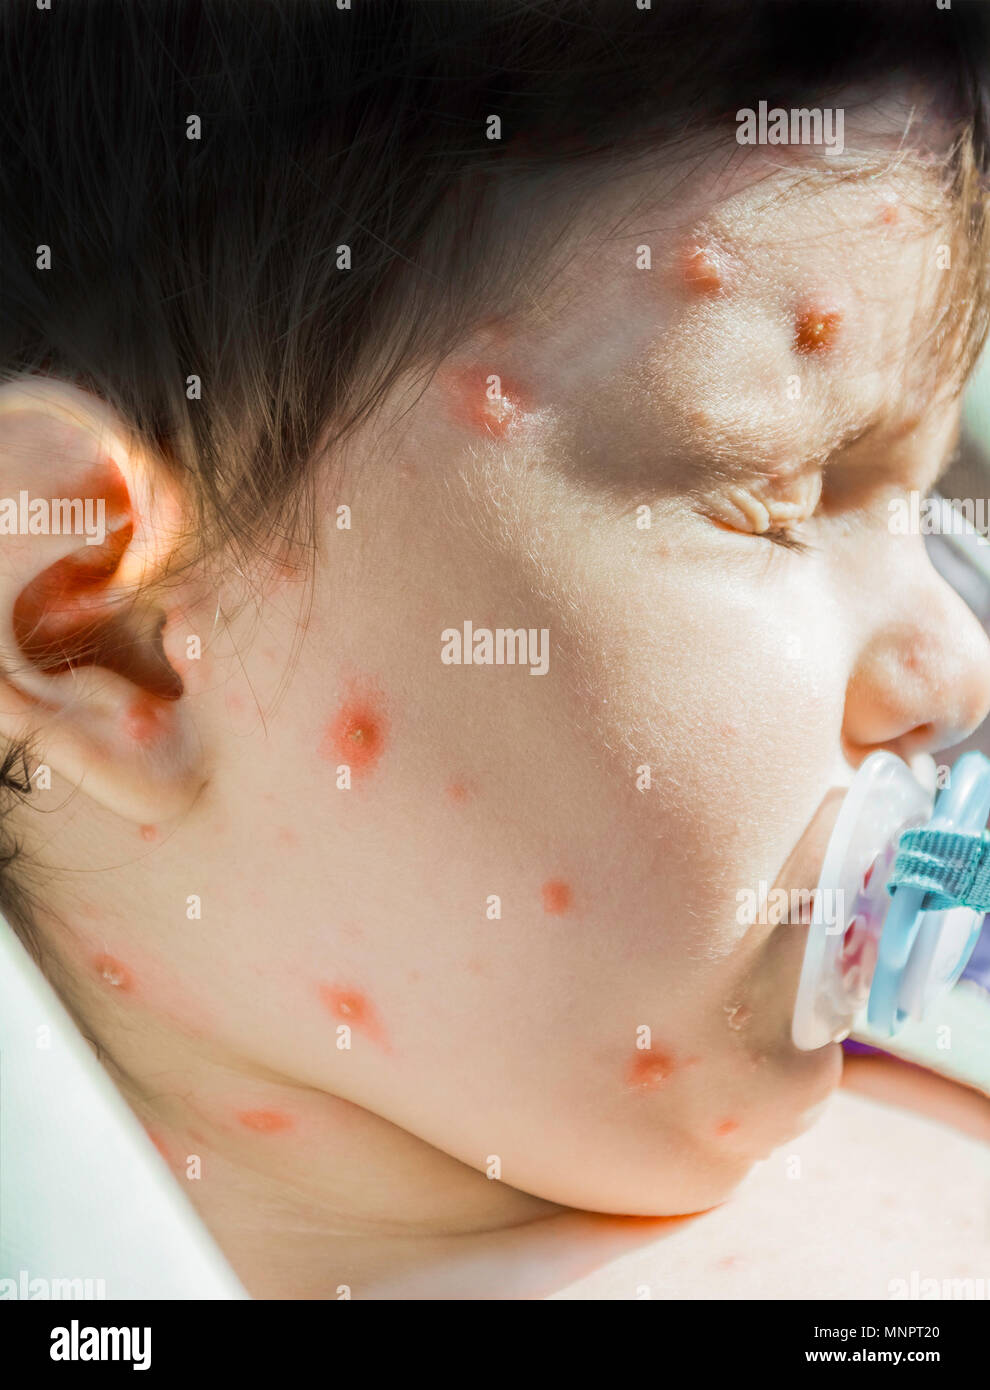 Gros plan du virus de la varicelle La varicelle ou éruption vésiculeuse et bulle sur visage de bébés avec la croûte. Concept de dermatologie. Banque D'Images